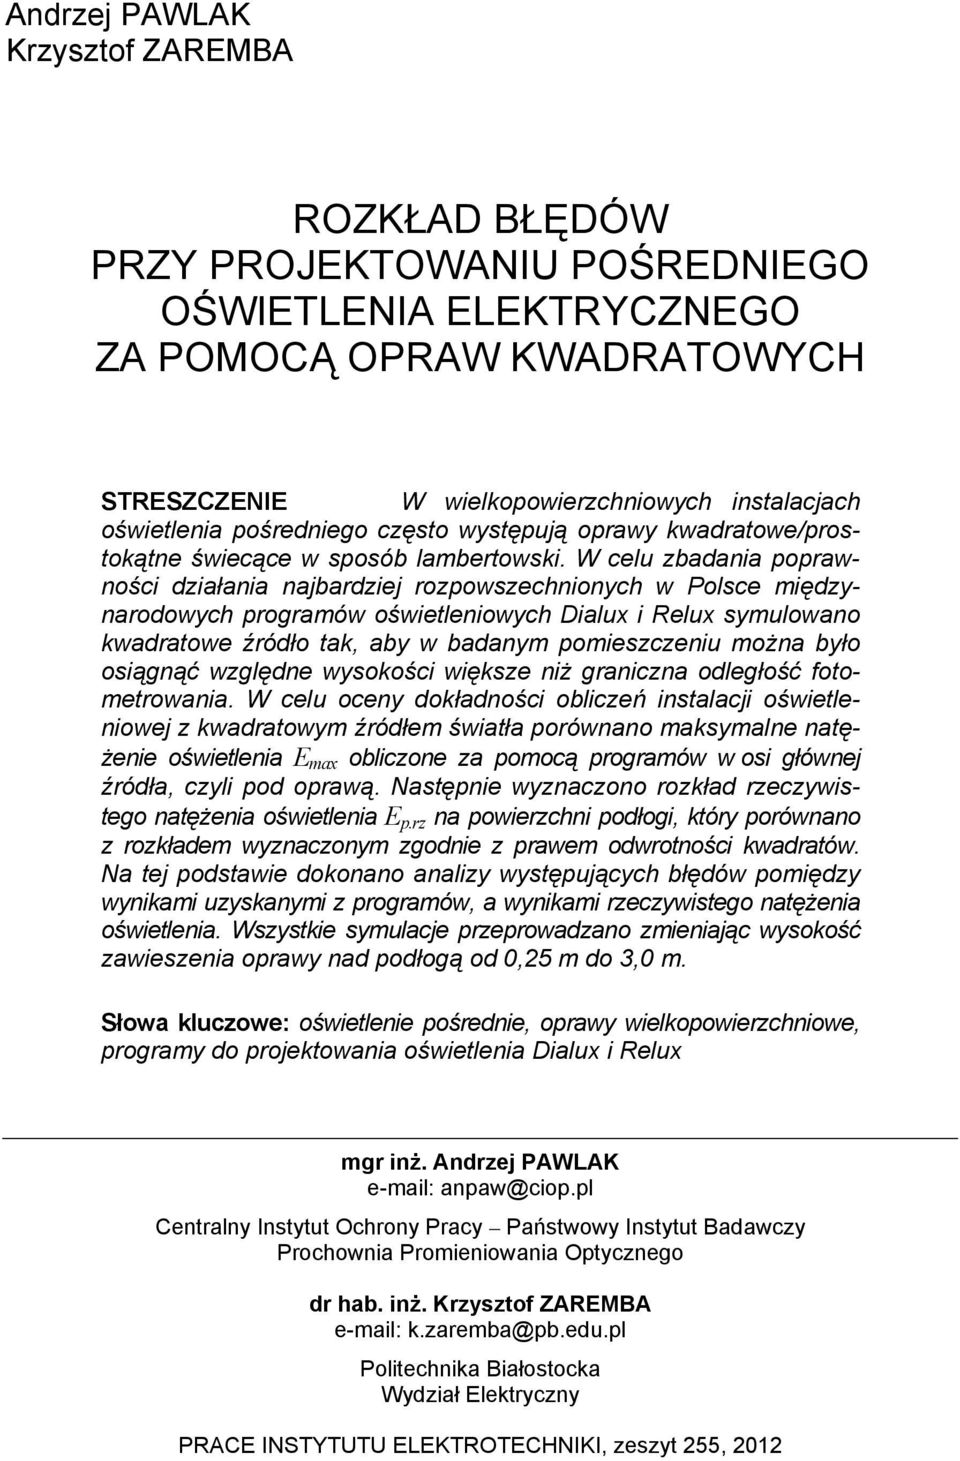 W celu badania orawności diałania najbardiej roowsechnionych w Polsce międynarodowych rogramów oświetleniowych Dialux i Relux symulowano kwadratowe źródło tak, aby w badanym omiesceniu można było